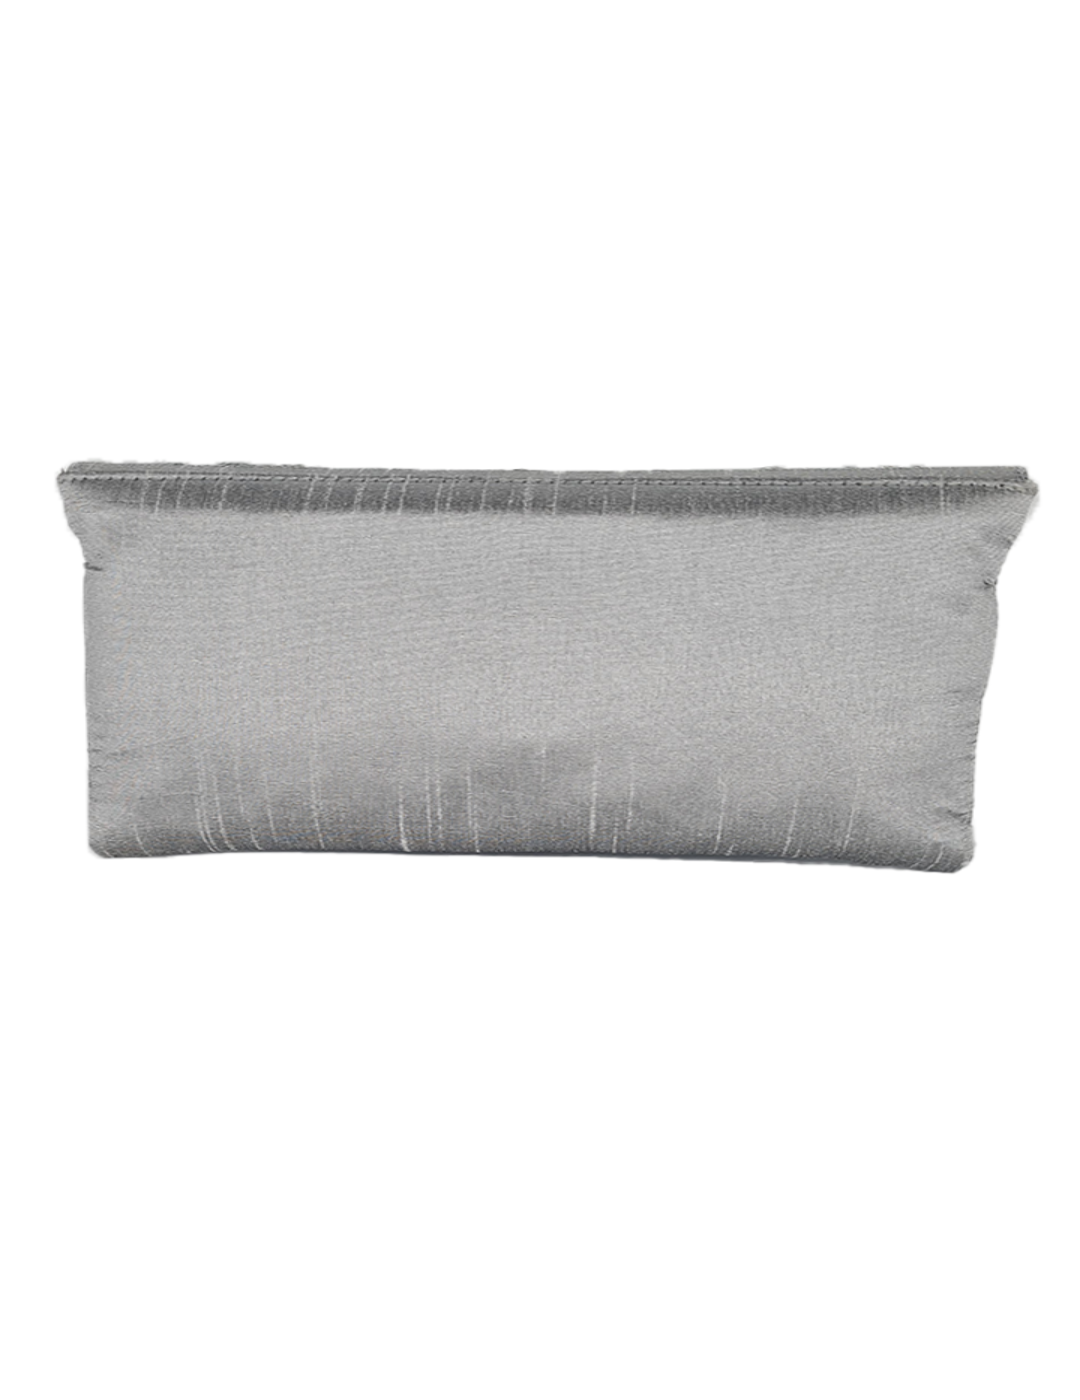 Grey/Silver Raw Silk Clutch With Zardozi Hand Embroidery